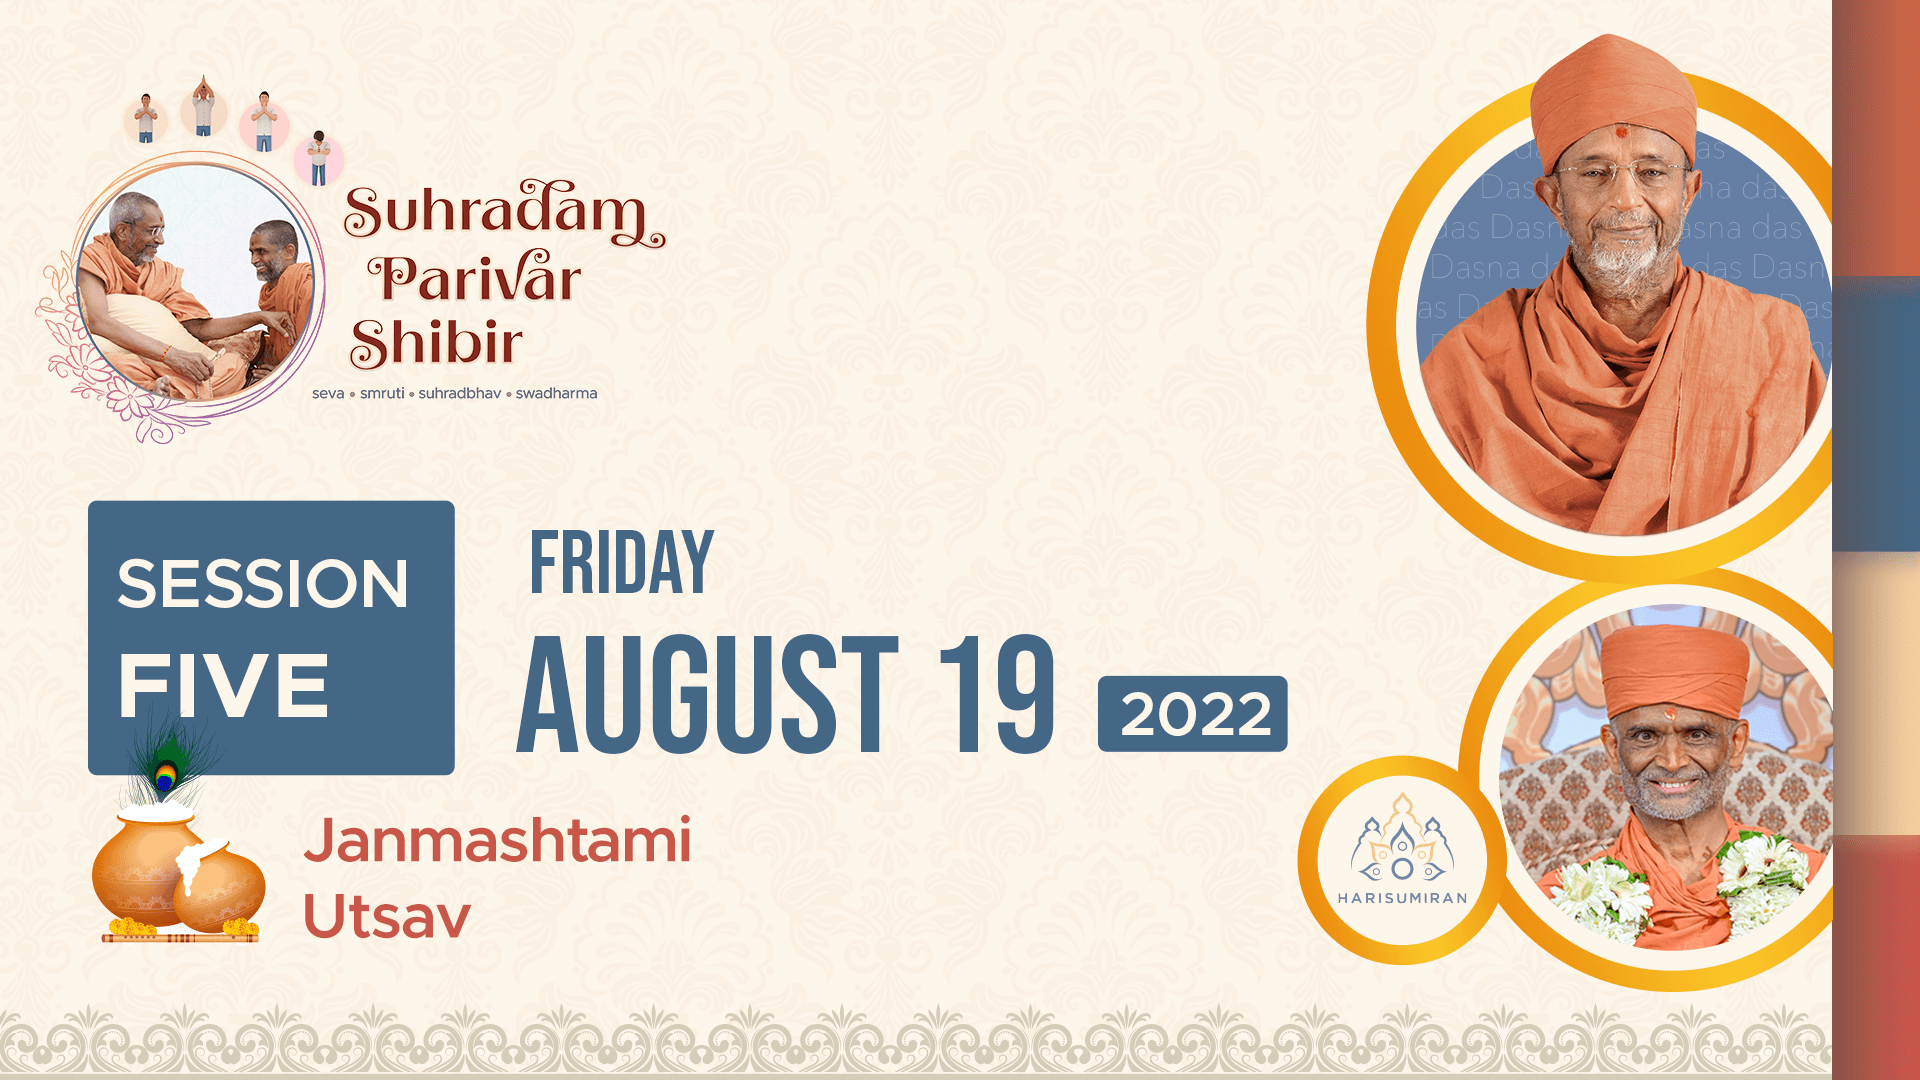 Suhradam Parivar Shibir 2022 | Session 5 (Janmashtmi Utsav)